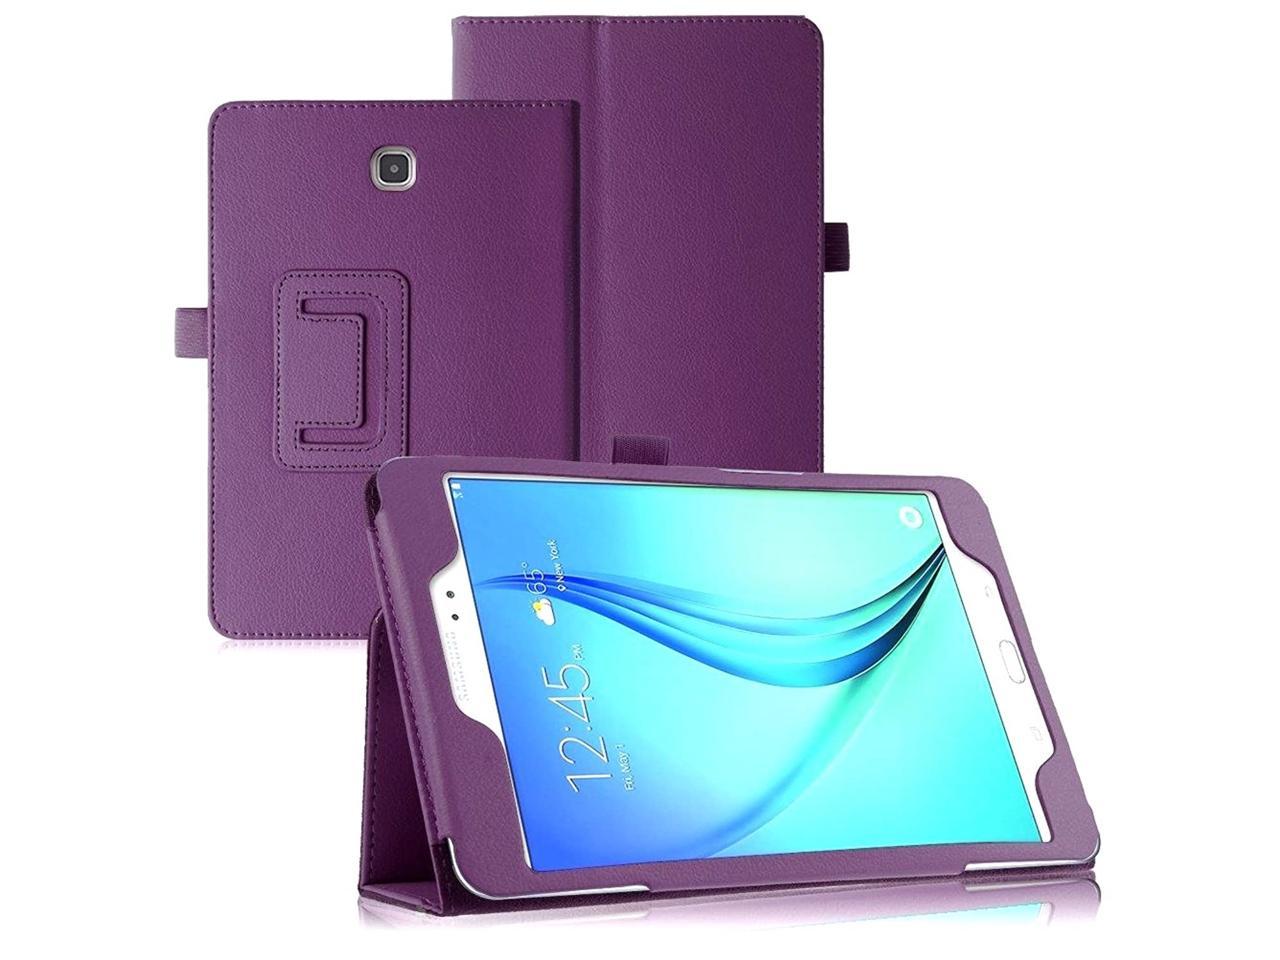 tandarts kabel Het eens zijn met Samsung Galaxy Tab 3 7.0 T210 Case,Samsung Tab3 7 Case,Beebiz PU Leather  Protective Case for Samsung Galaxy T210r Case with Stand (Purple) -  Newegg.com